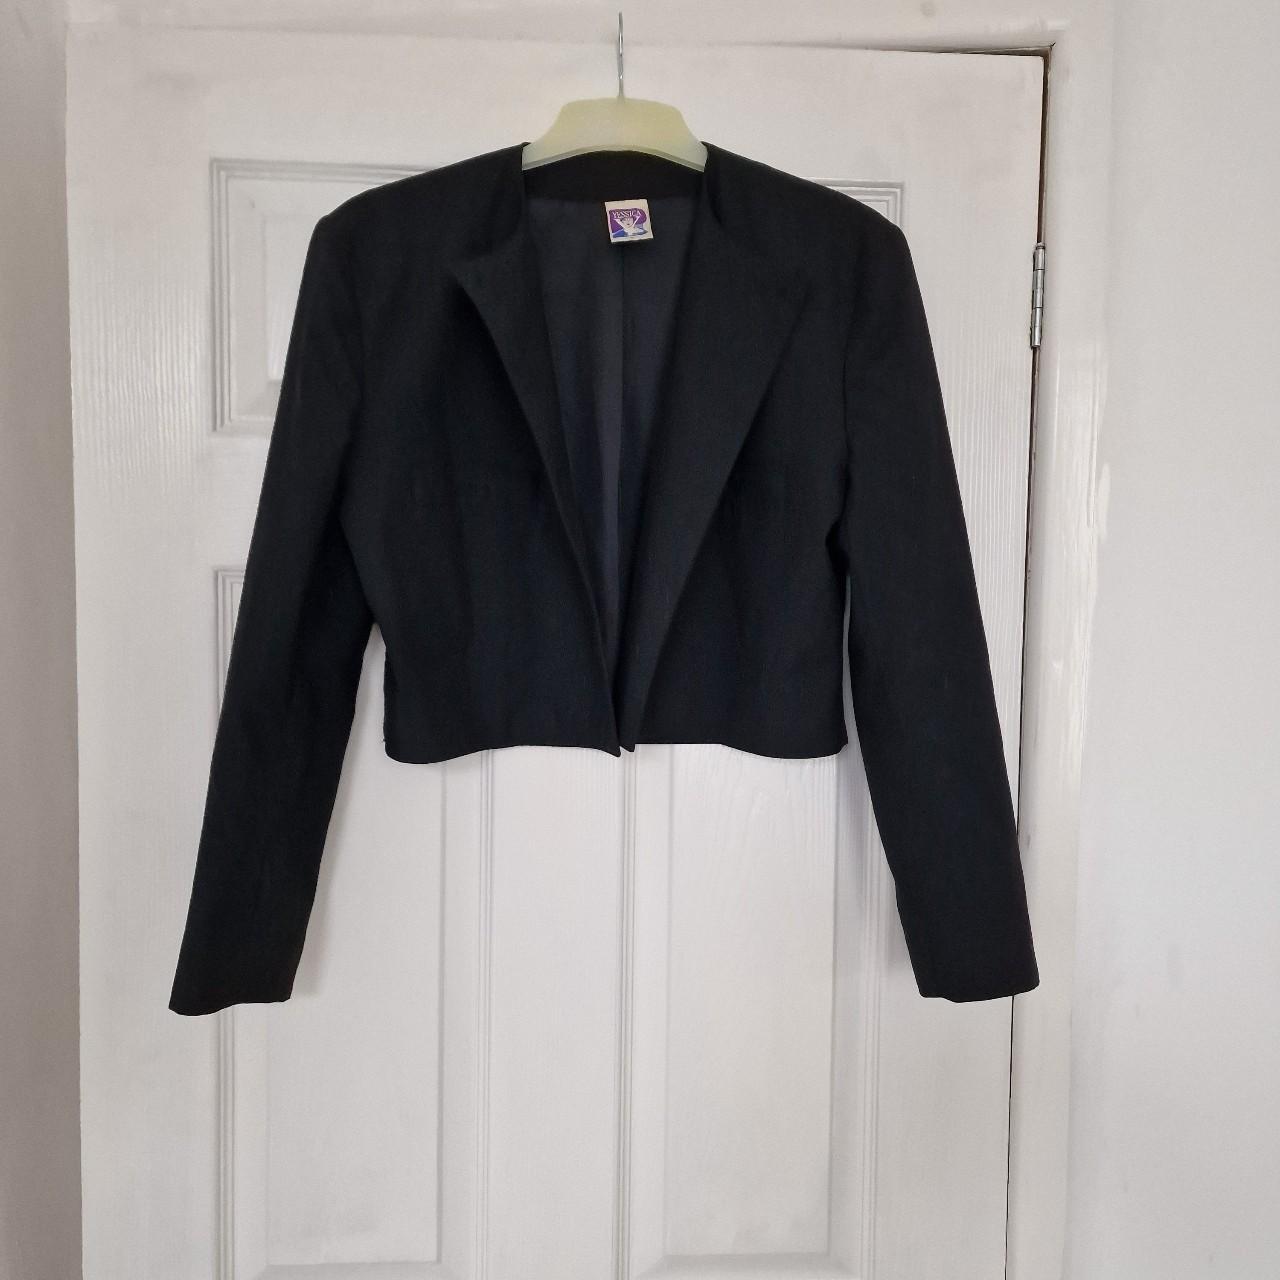 Black vintage blazer Has shoulder padding detailing... - Depop